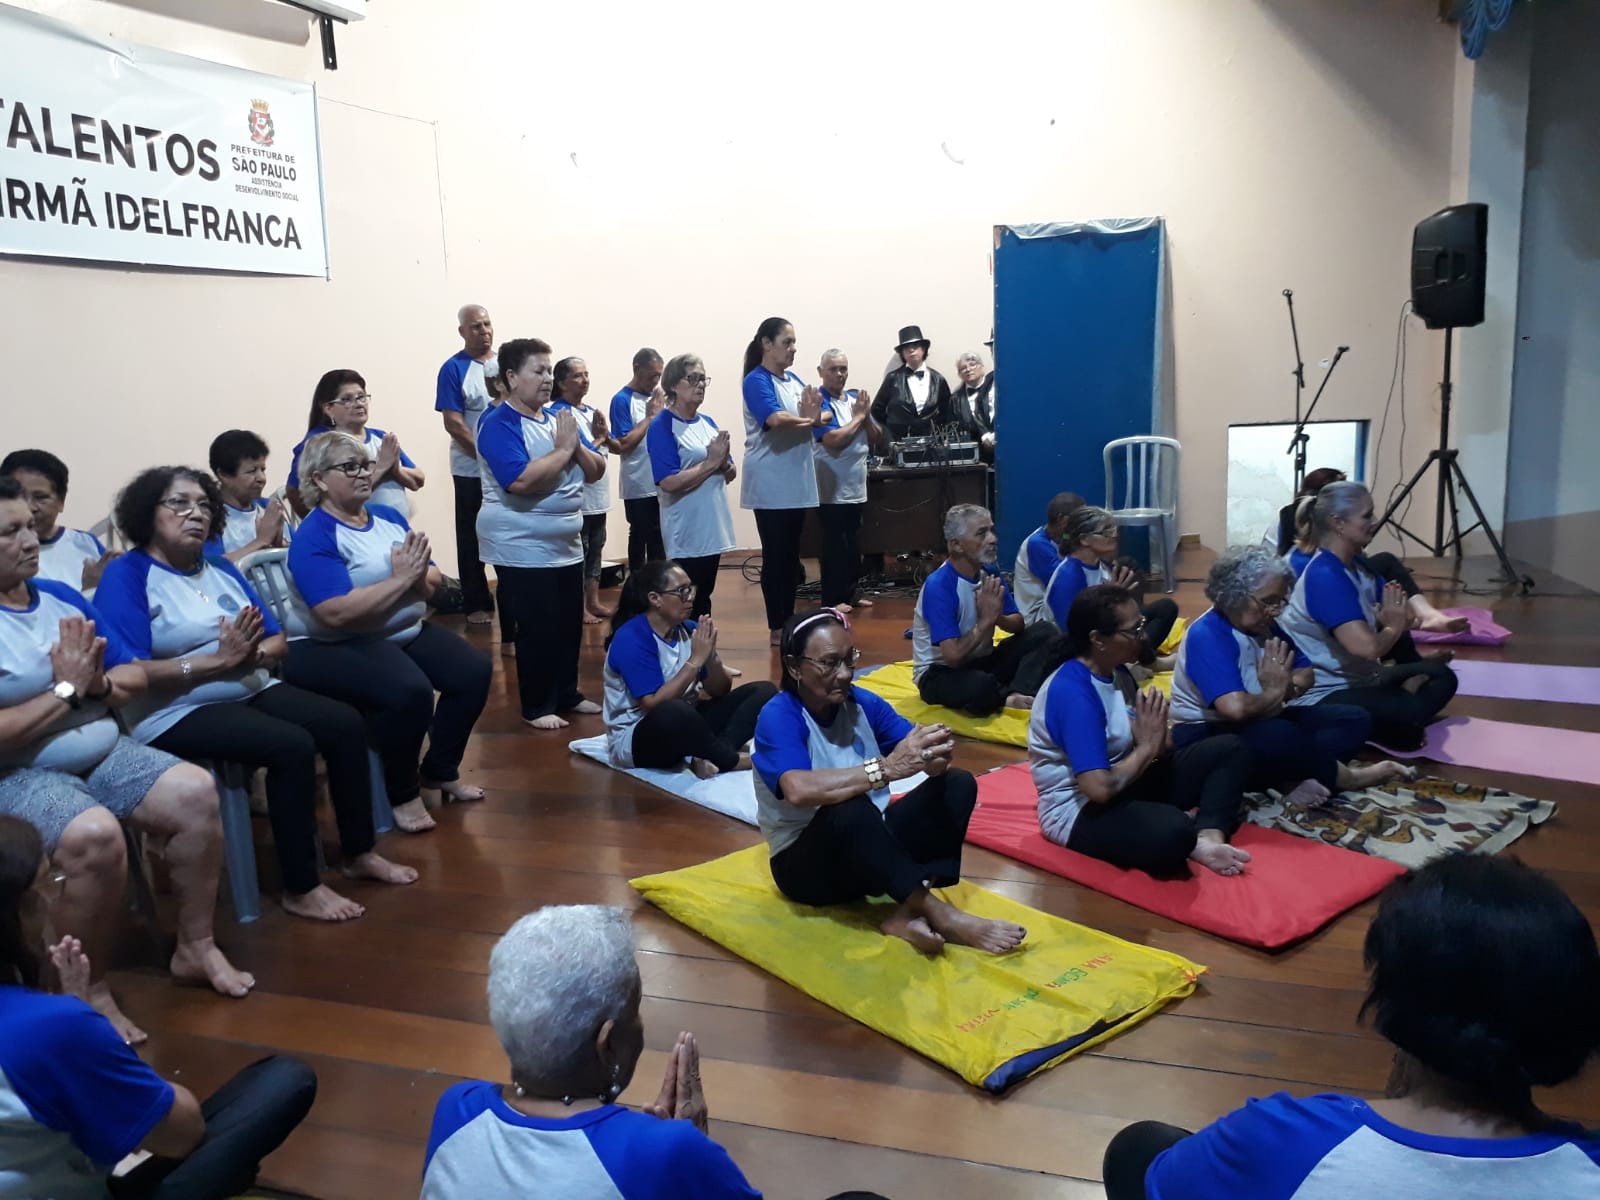 Dezenas de idosos estão em cima de um palco, usando camisetas brancas com mangas azuis. Todos estão sentados, com as palmas das mãos juntas, numa prática de yoga.